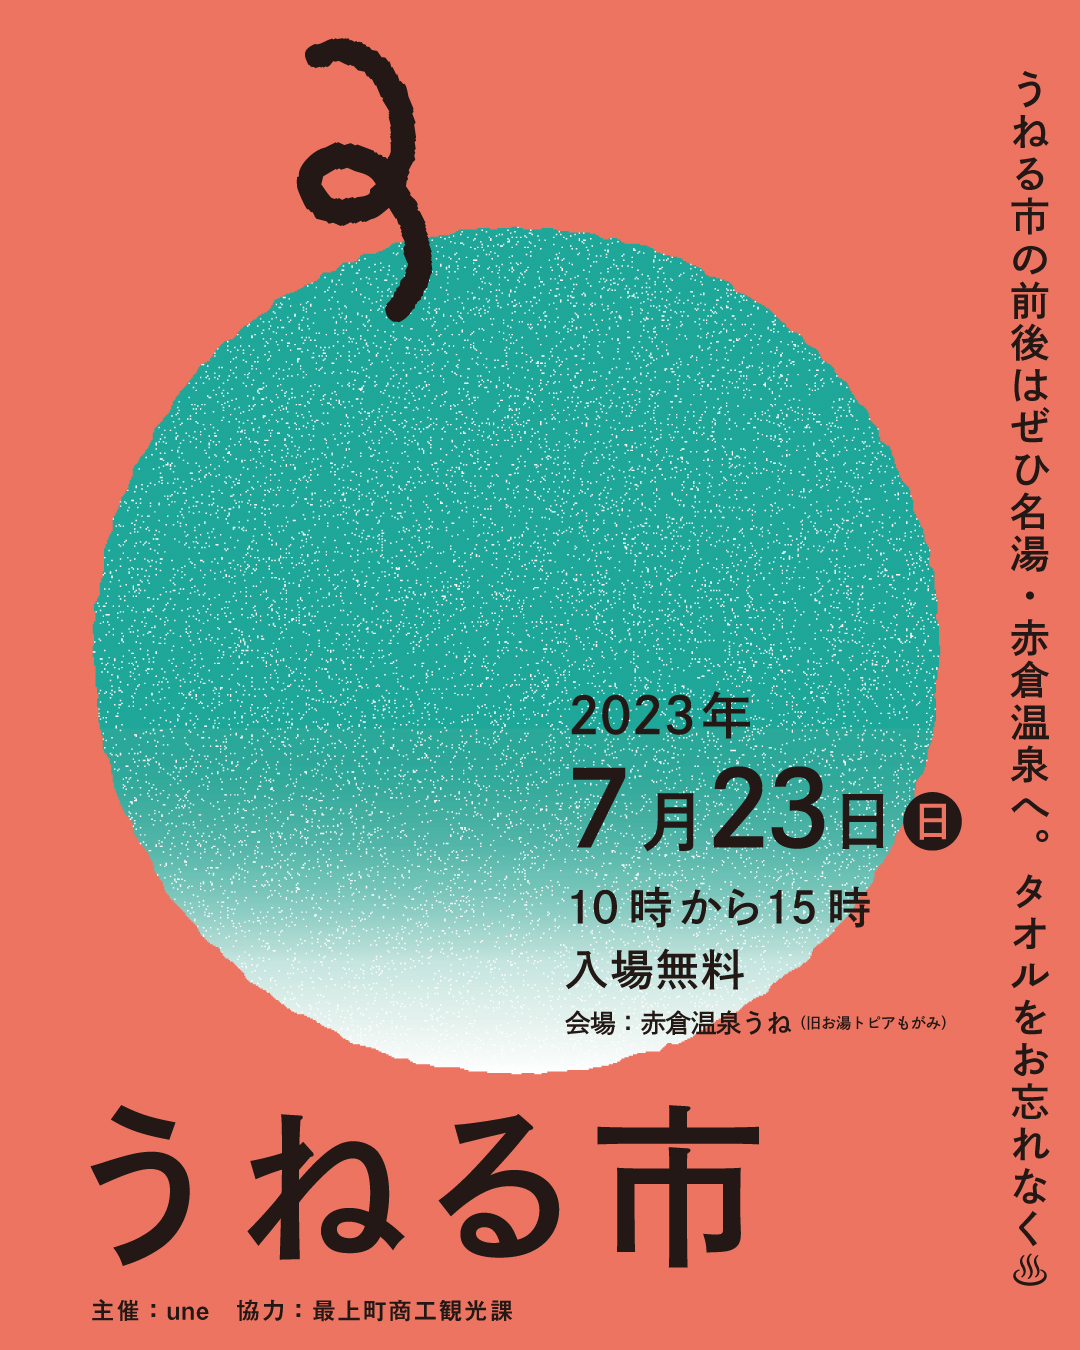 【山形イベント情報7/23】うねる市「夏」が開催されます。(赤倉温泉)